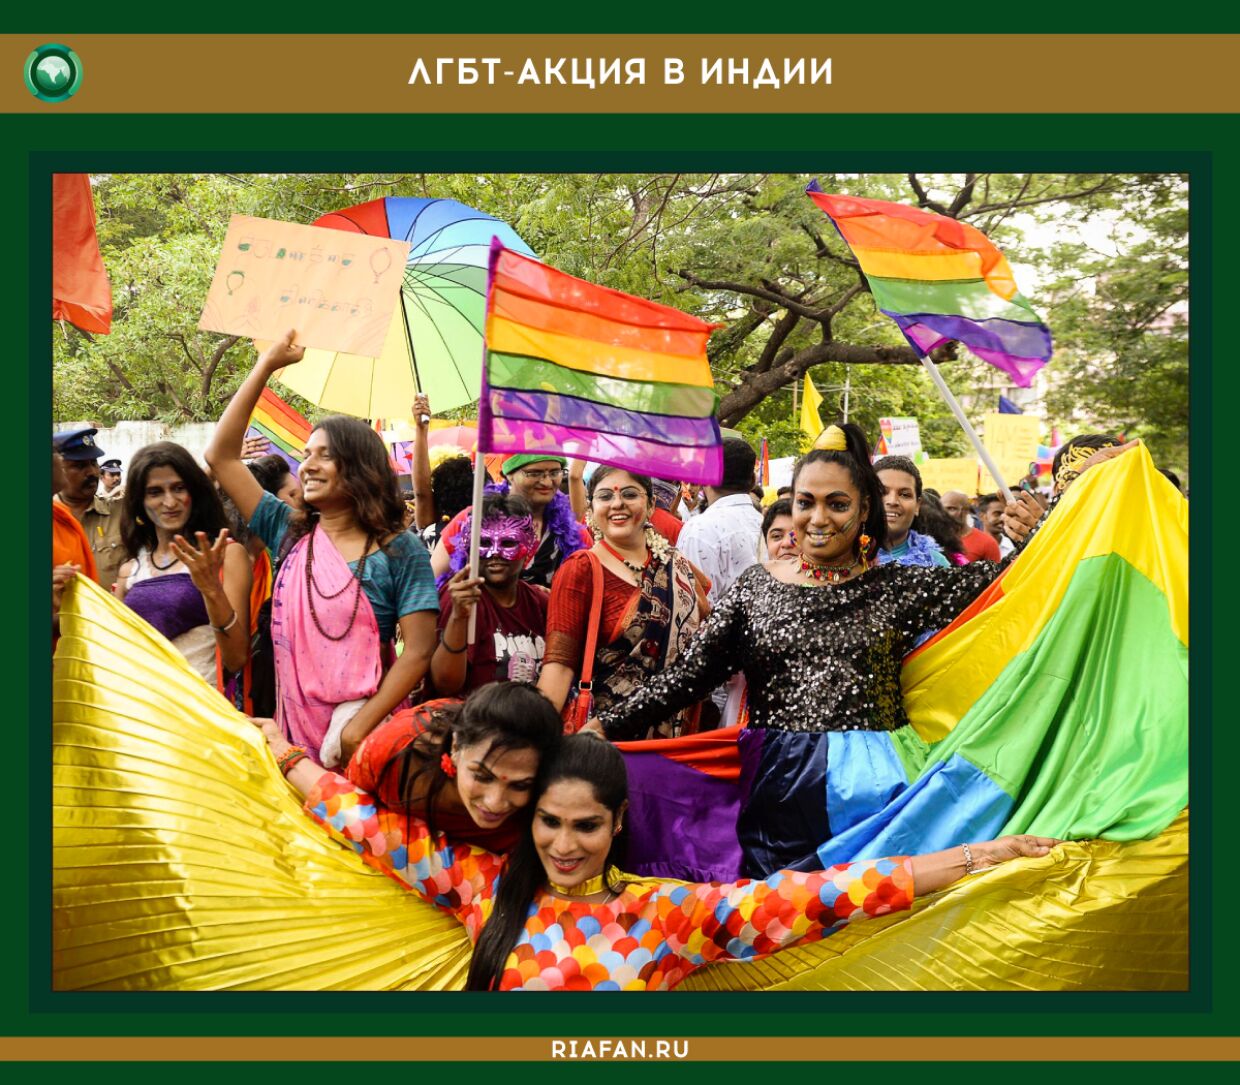 Акция ЛГБТ-сообщества в Индии